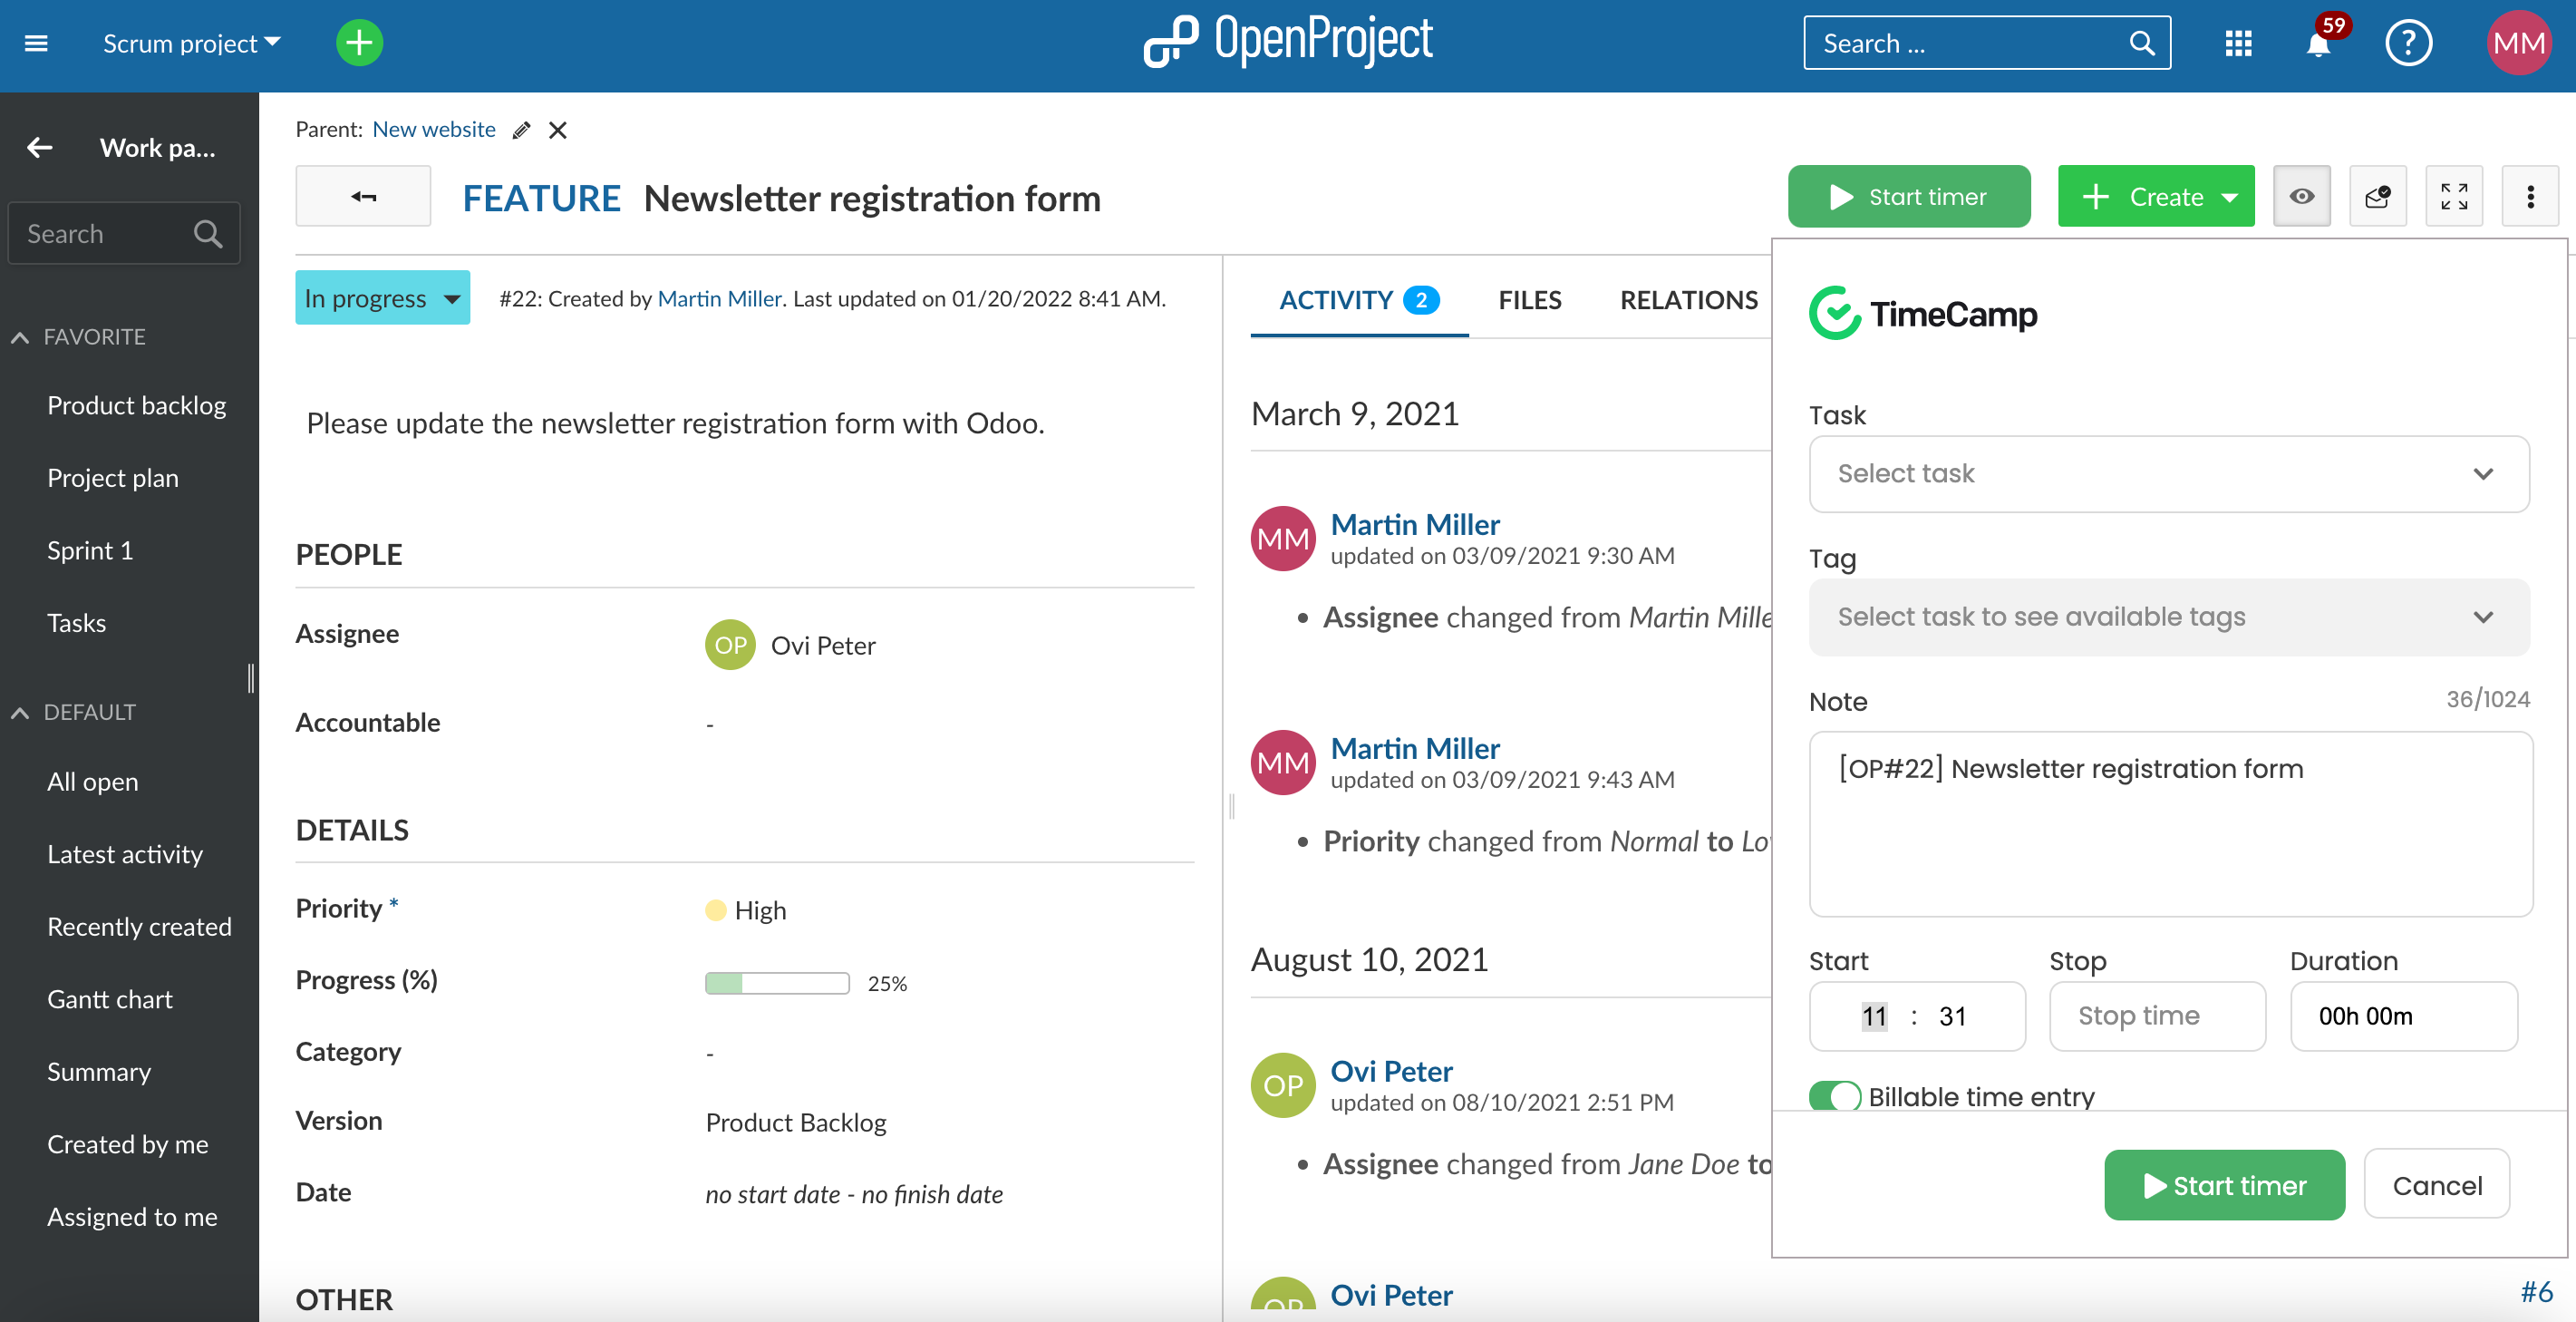 Vista detallada del paquete de trabajo de OpenProject con menú desplegable desde iniciar el temporizador hasta seleccionar el proyecto y la tarea de TimeCamp